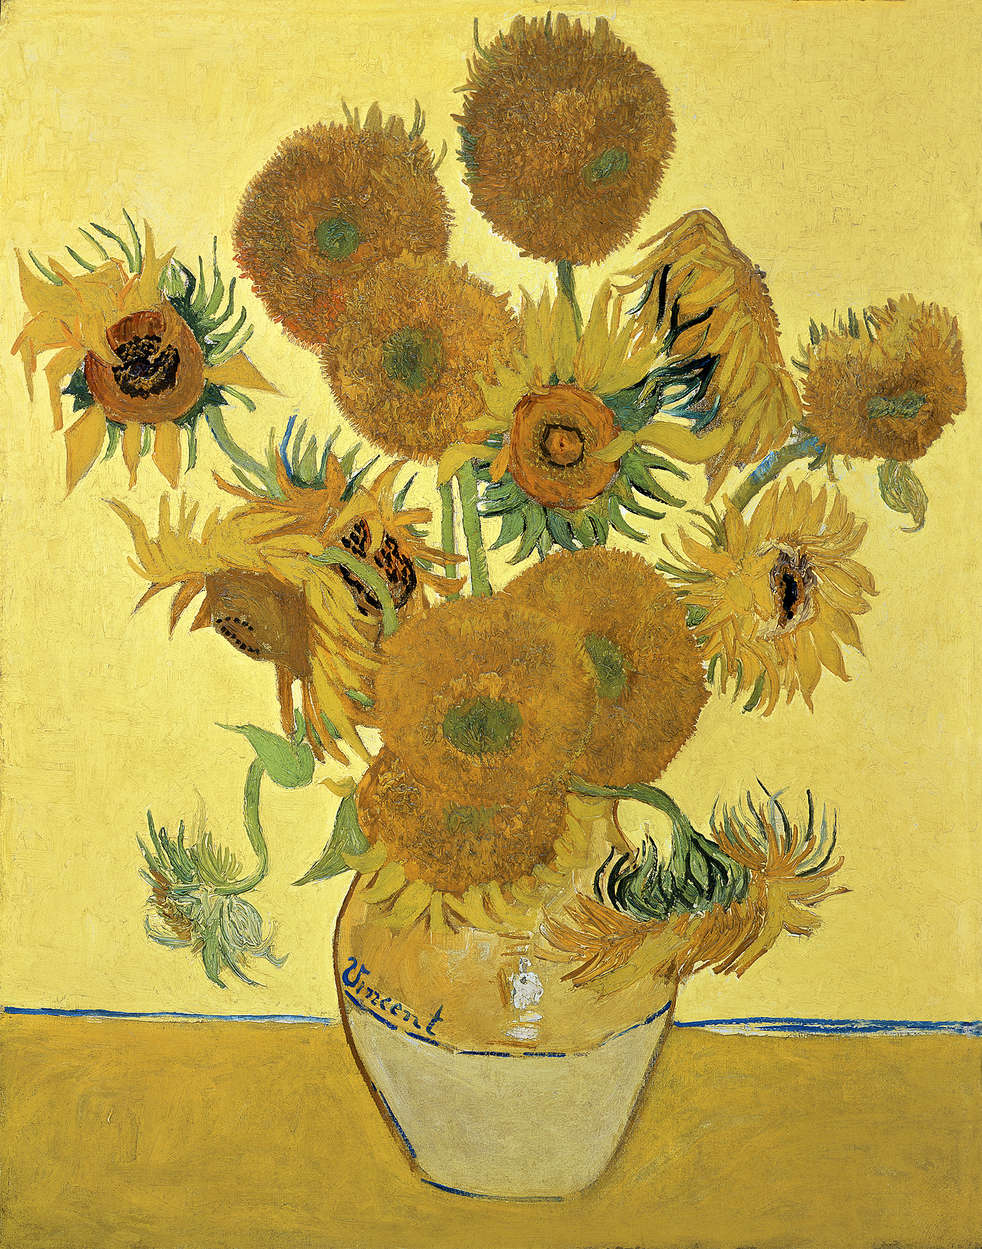             Mural "Girasoles" de Vincent van Gogh
        